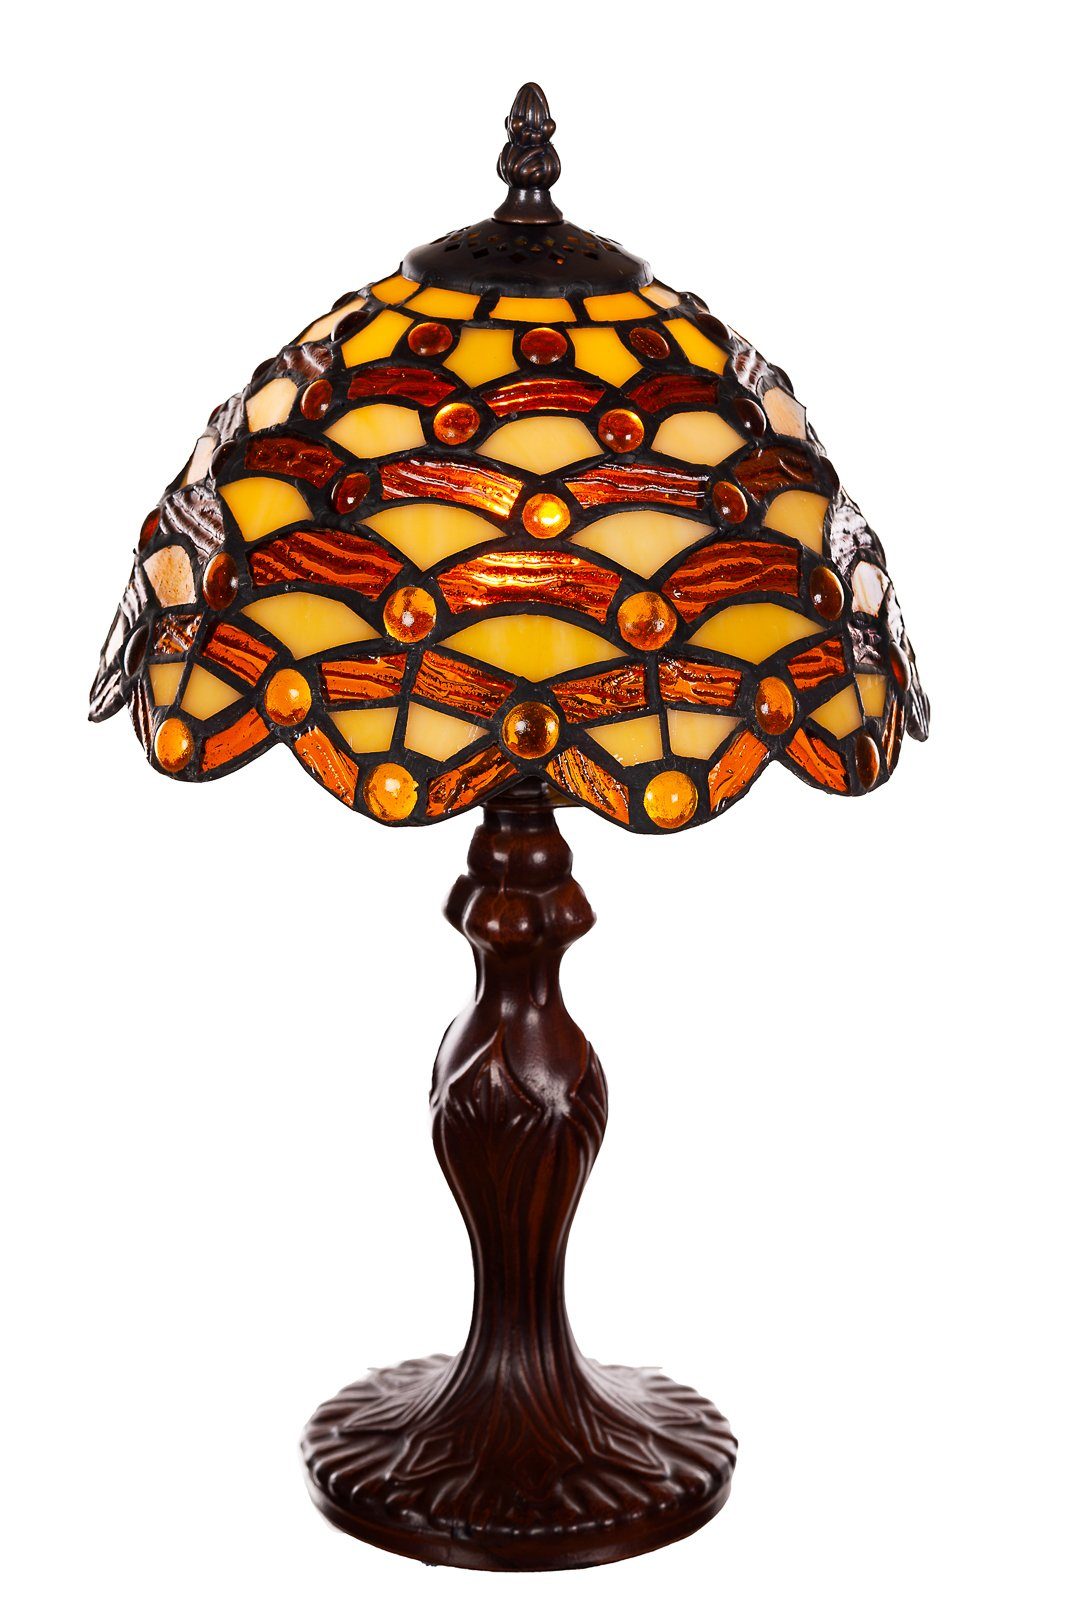 Tiffany Steine Motiv Tischlampe Lampe BIRENDY Stehlampe Dekorationslampe Waben Ti156